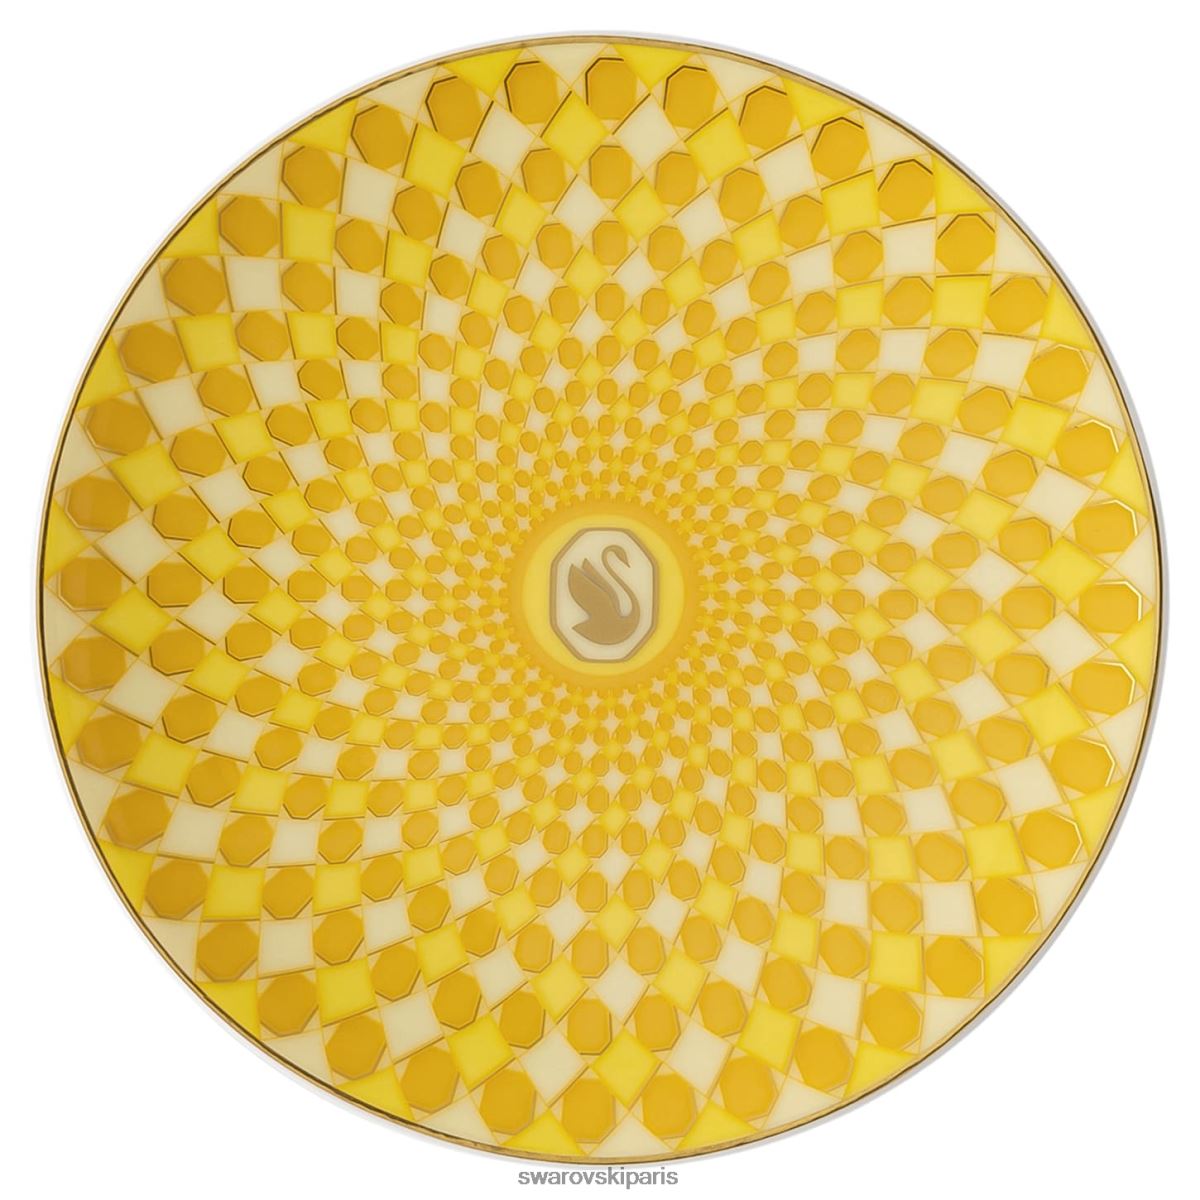 décorations Swarovski plaque signalétique porcelaine, jaune RZD0XJ1750